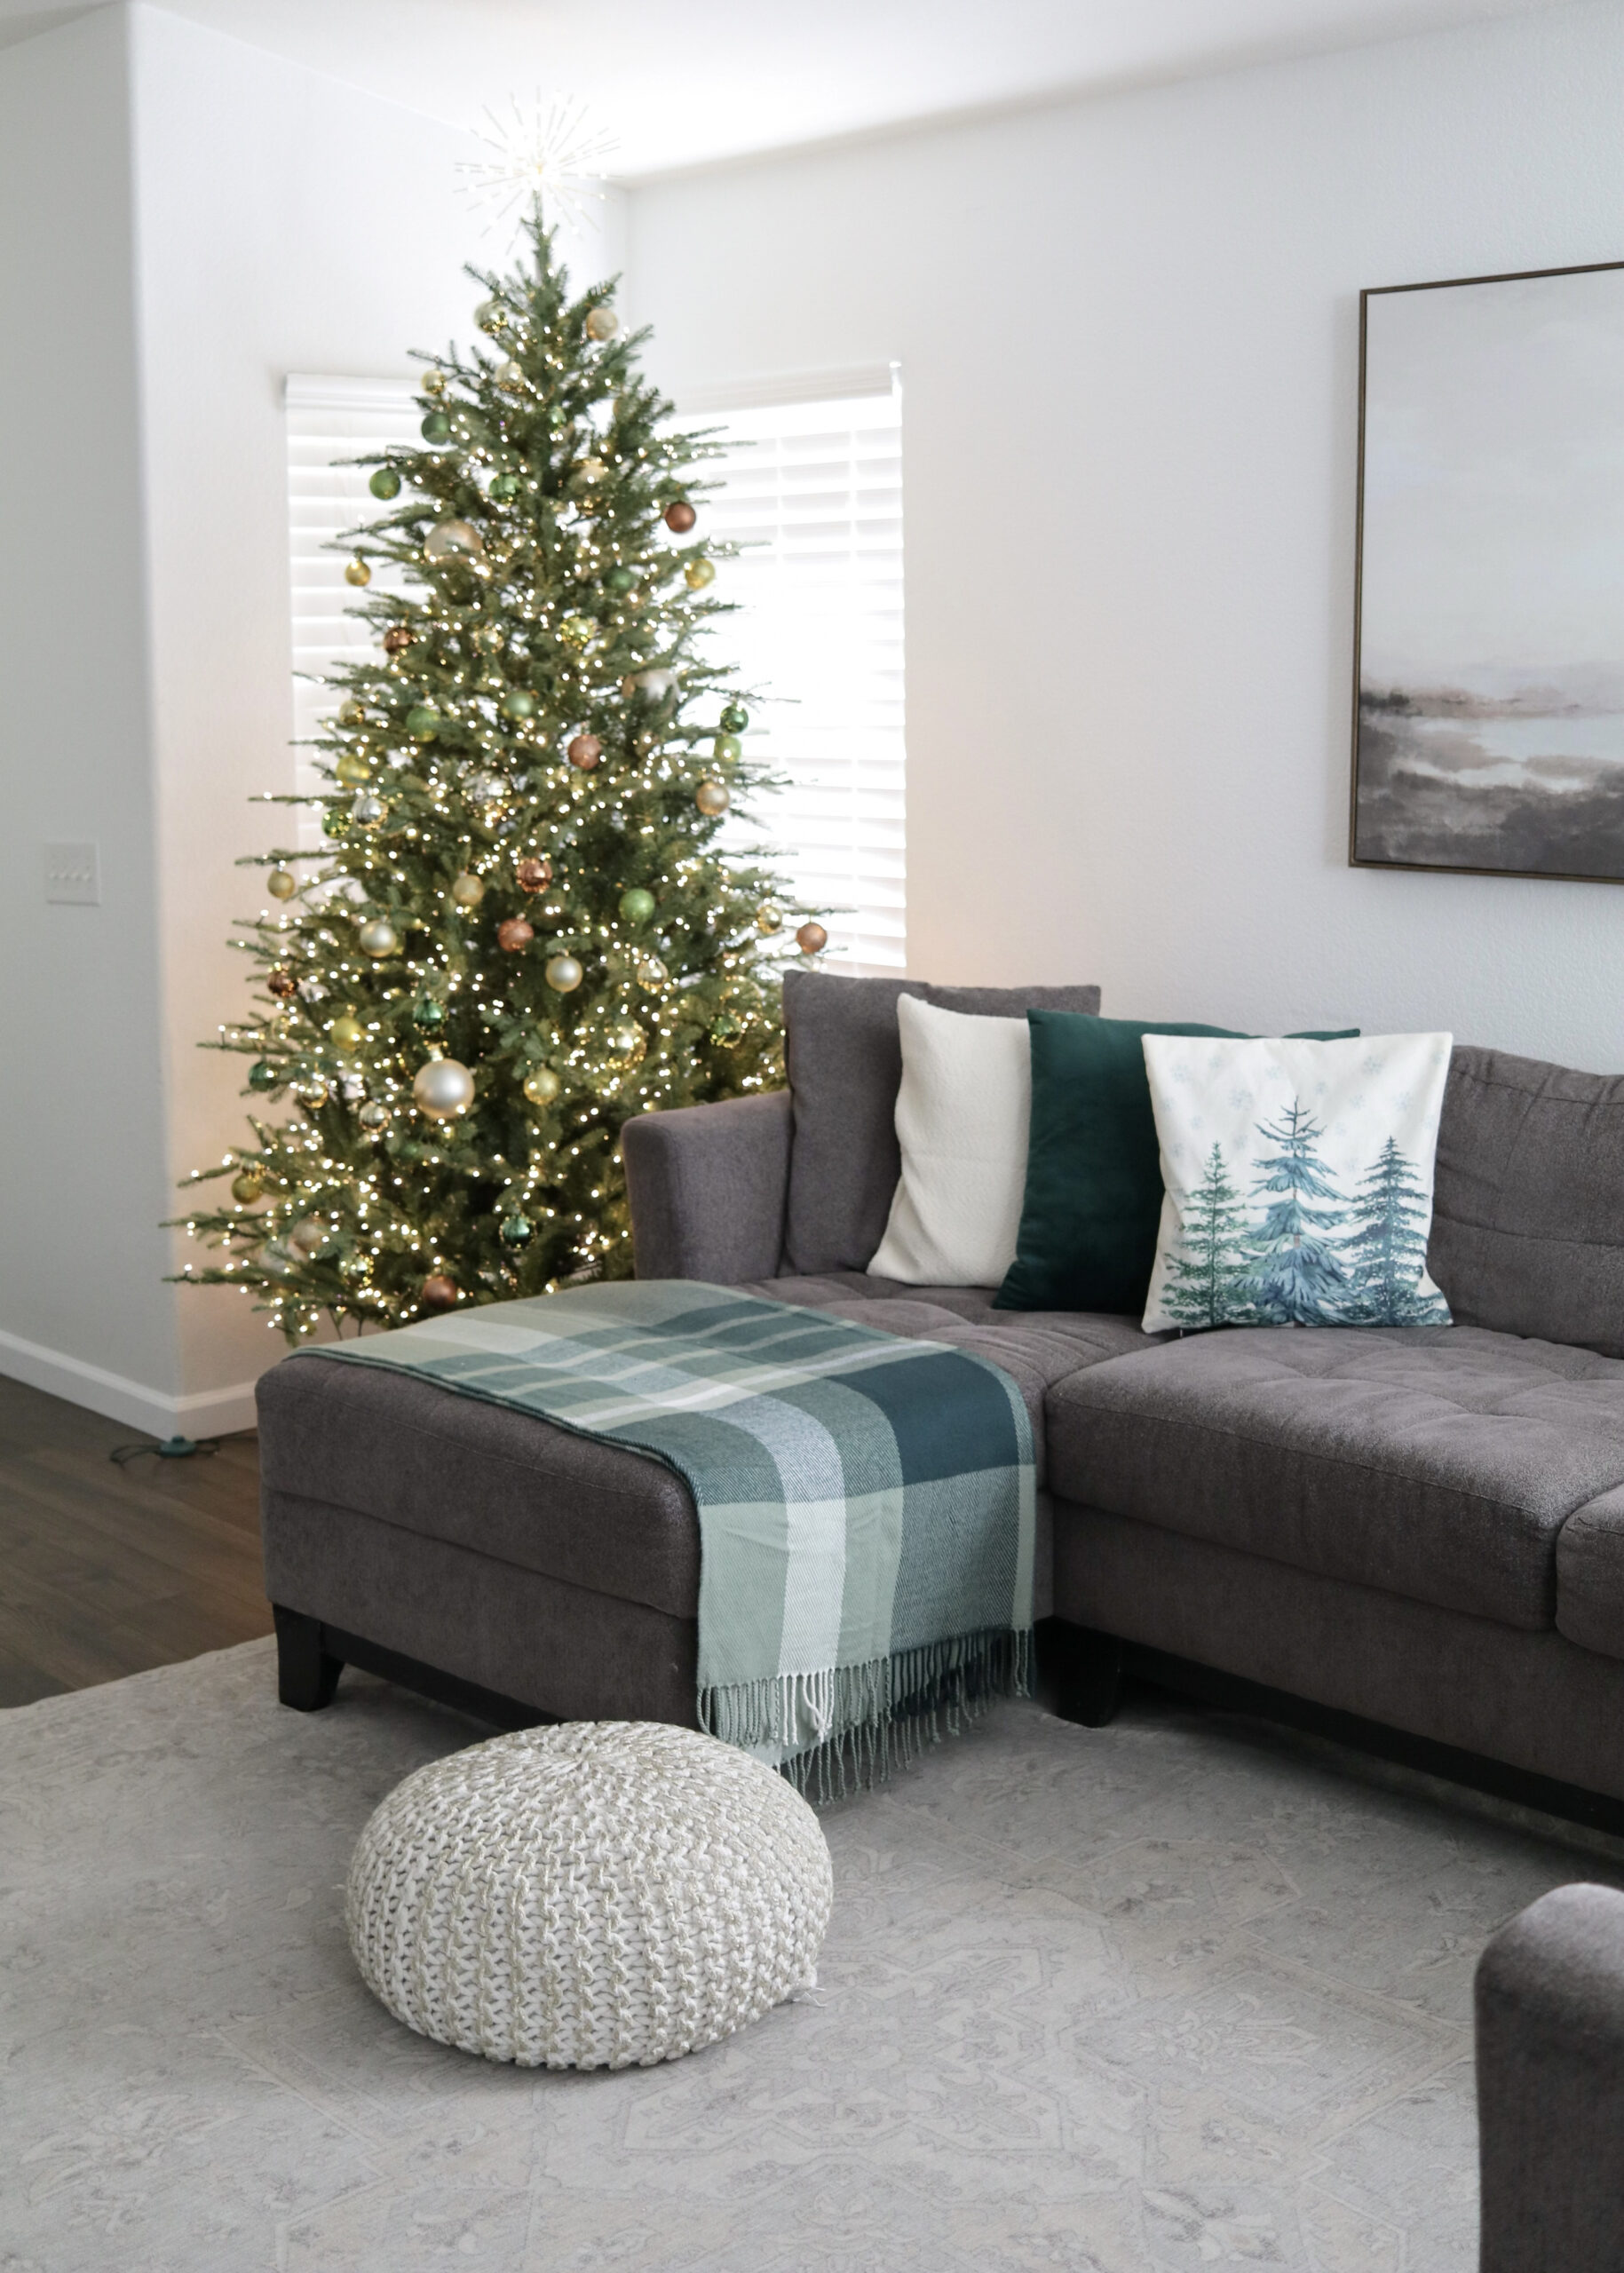 viral Home Depot Christmas tree and living room Christmas decor